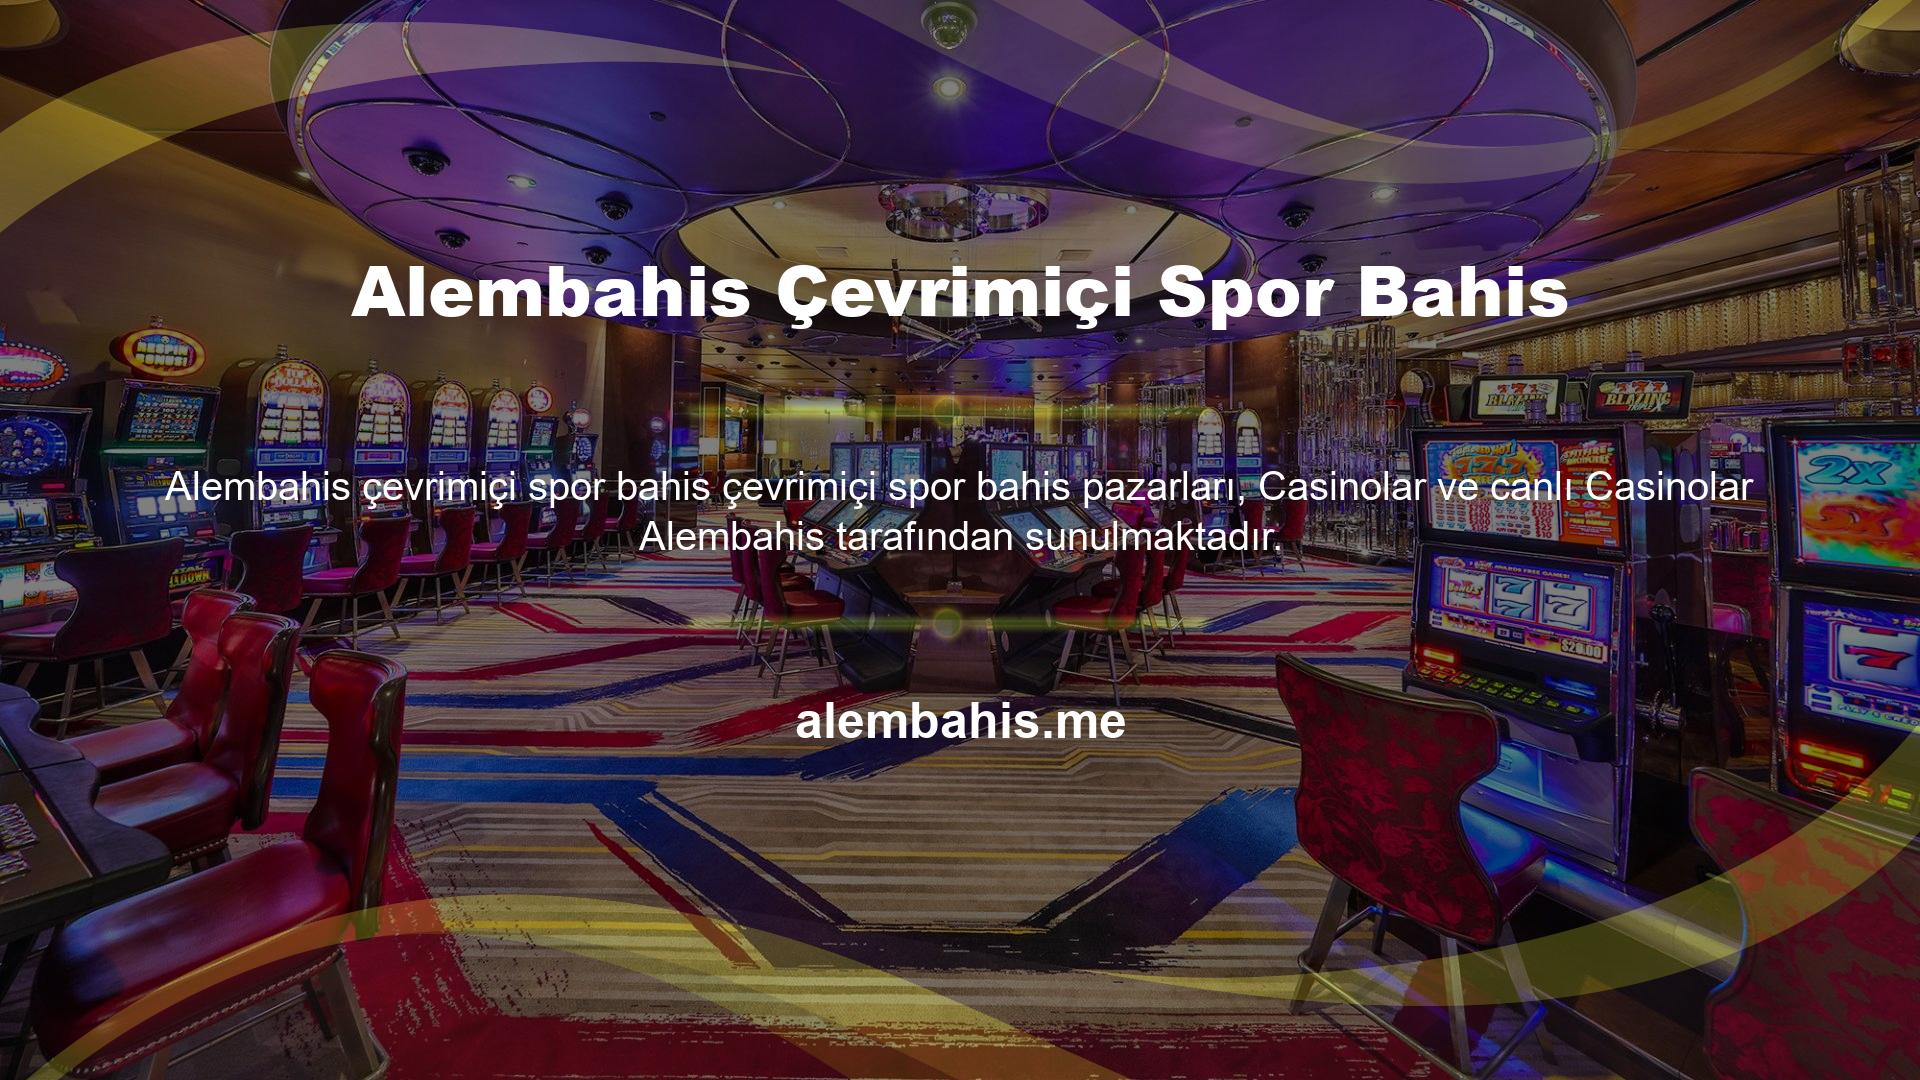 Spor bahislerinin Türkiye'de ve dünyada en popüler oyun olduğunu düşünüyorsanız Alembahis sunduğu spor bahis alternatiflerini değerlendirin